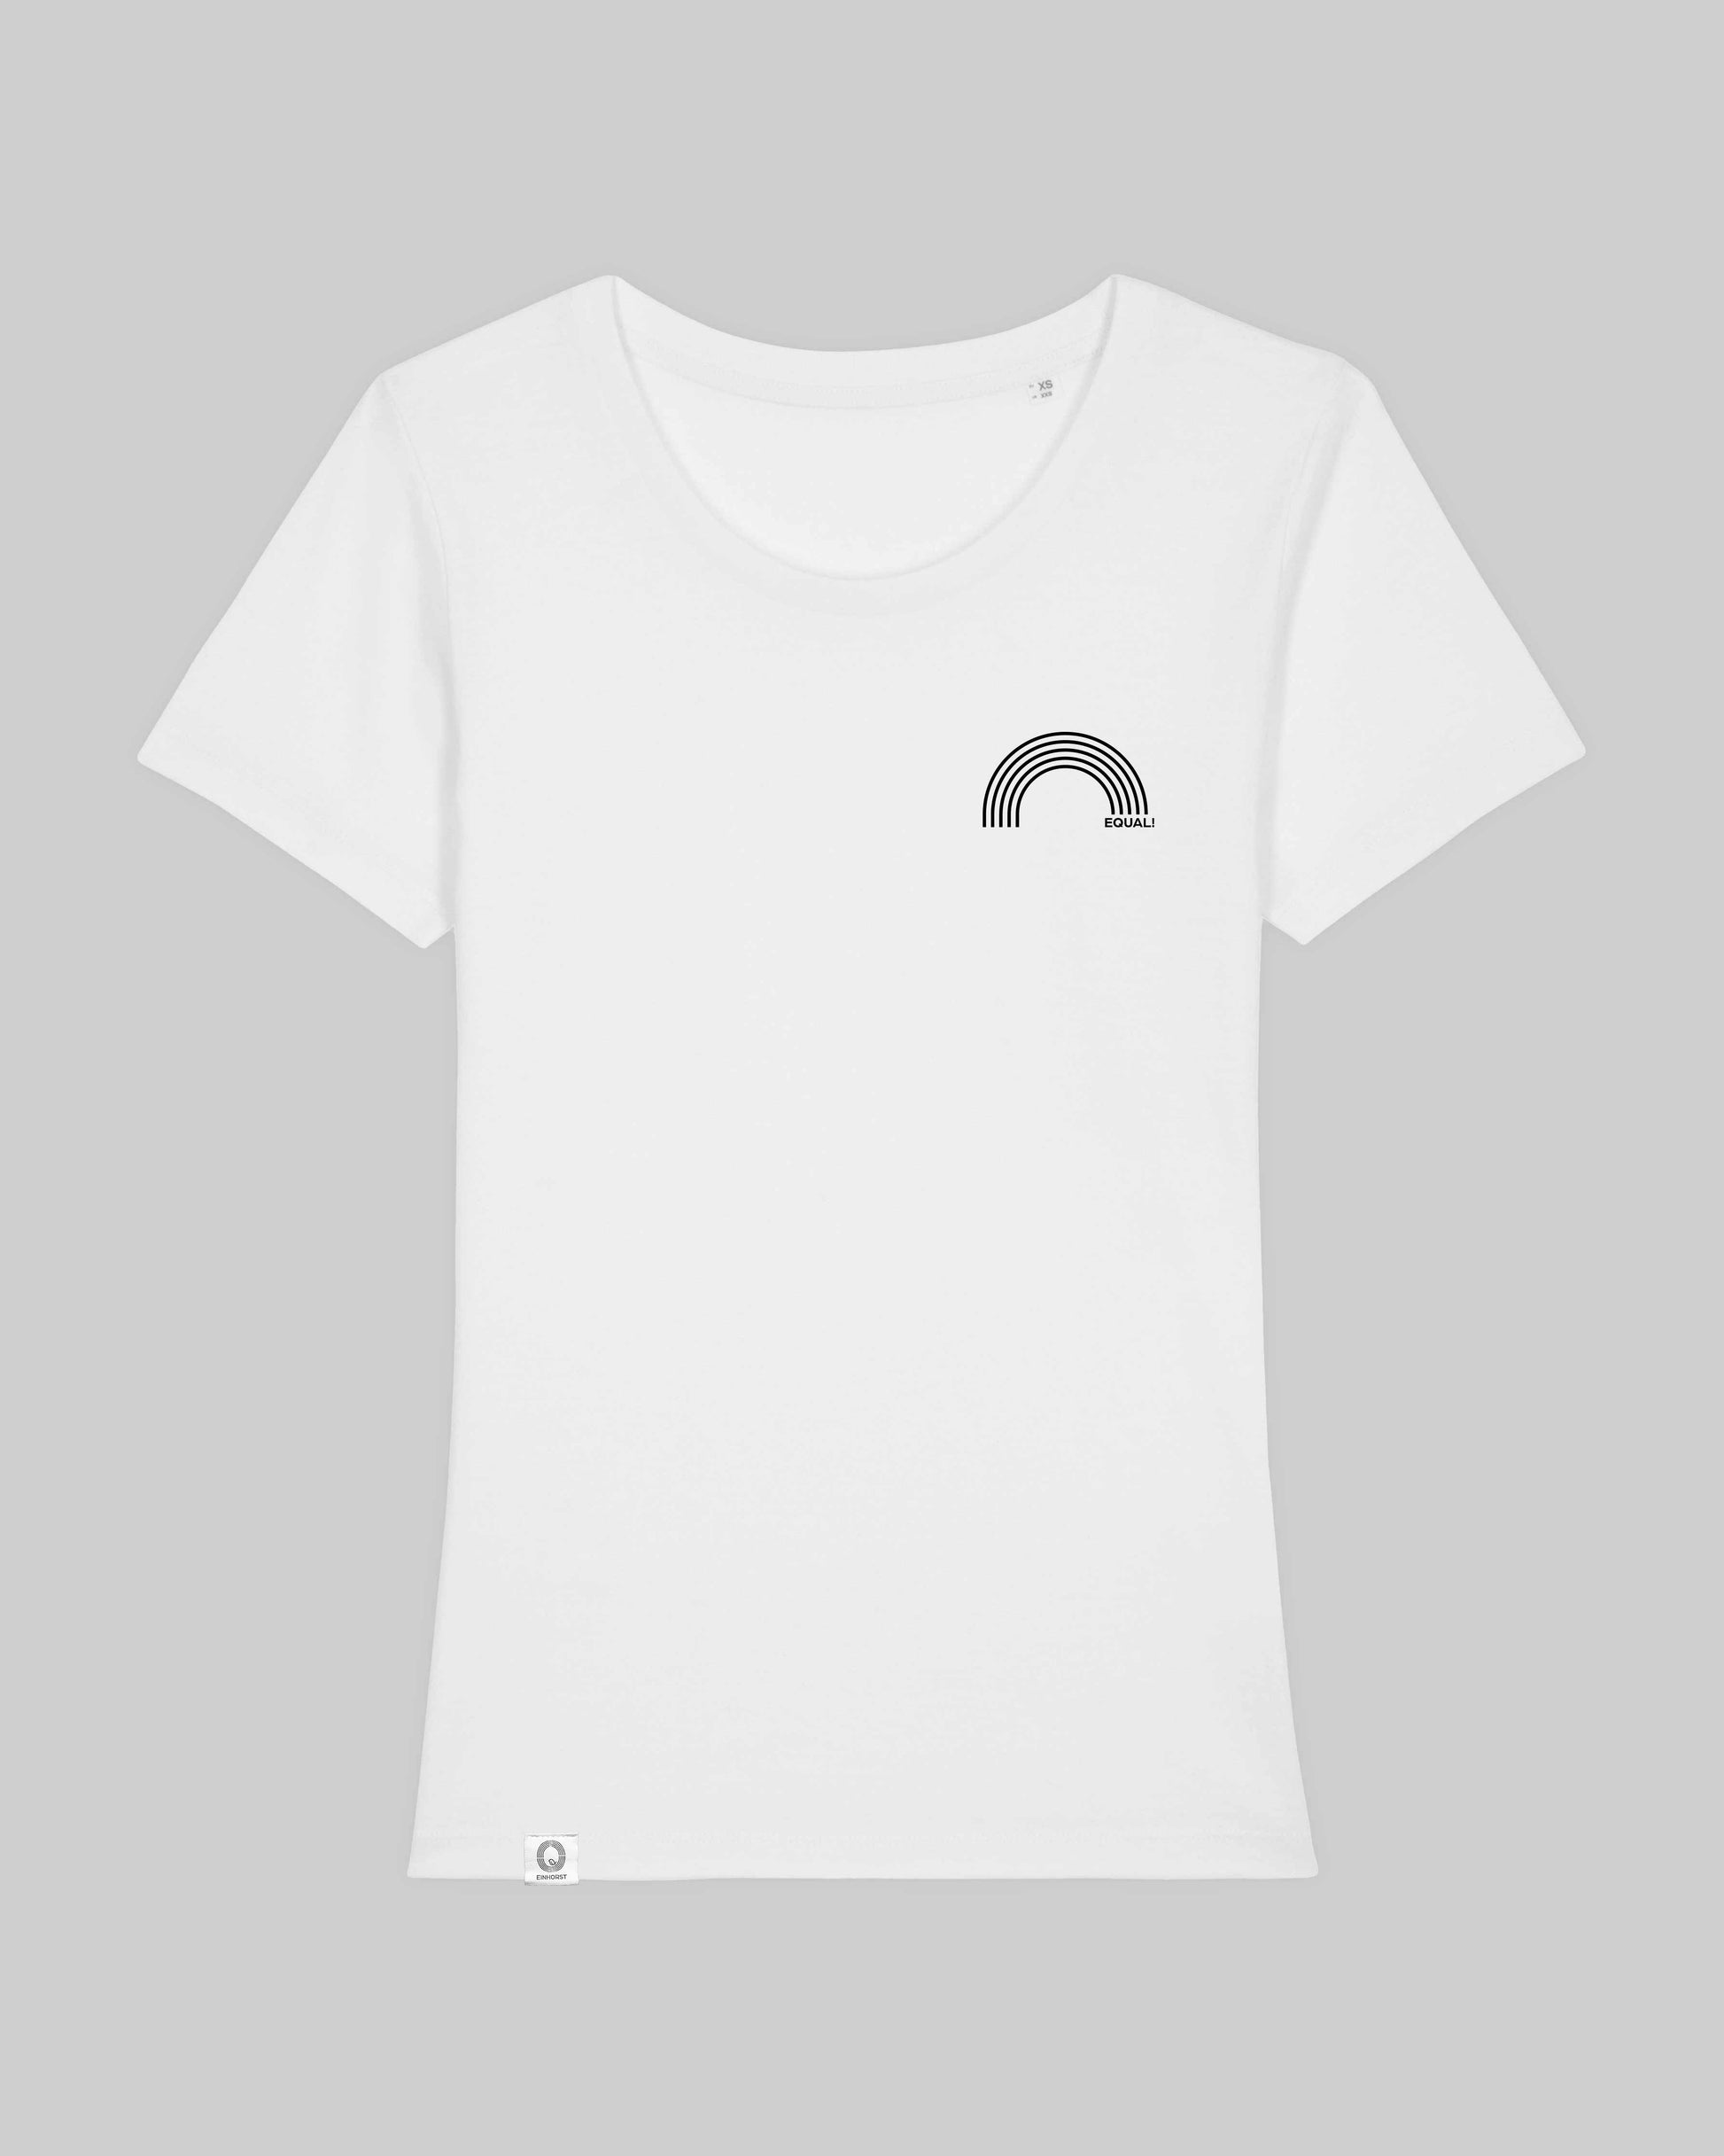 EINHORST® Organic Shirt tailliert in "Weiß" mit dem Motiv "equal Regenbogen" in der Kombination schwarzer Regenbogen mit schwarzer Schrift, Bild von Shirt von vorne